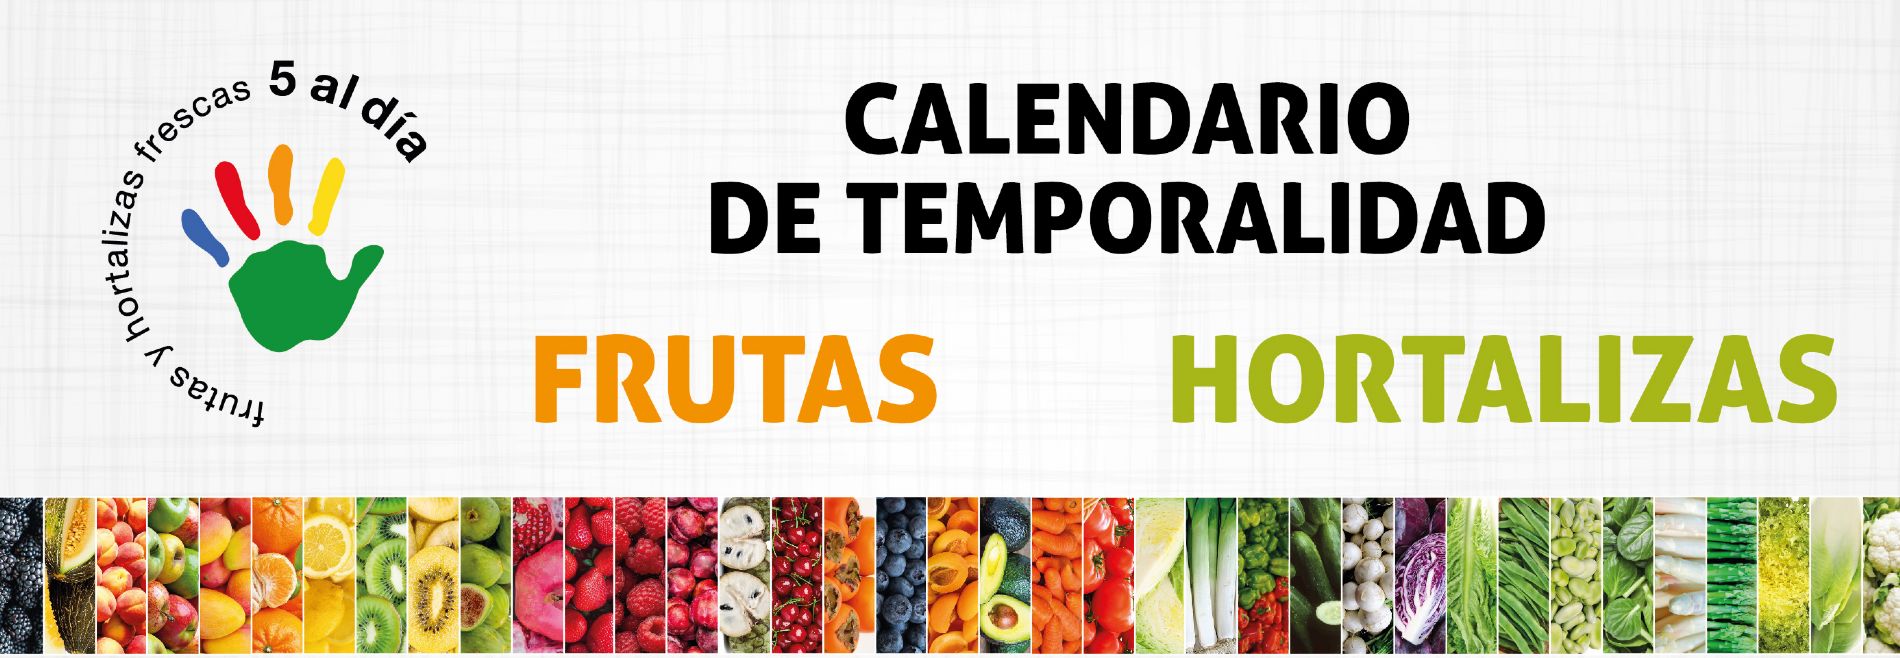 Calendario de frutas y hortalizas de temporada